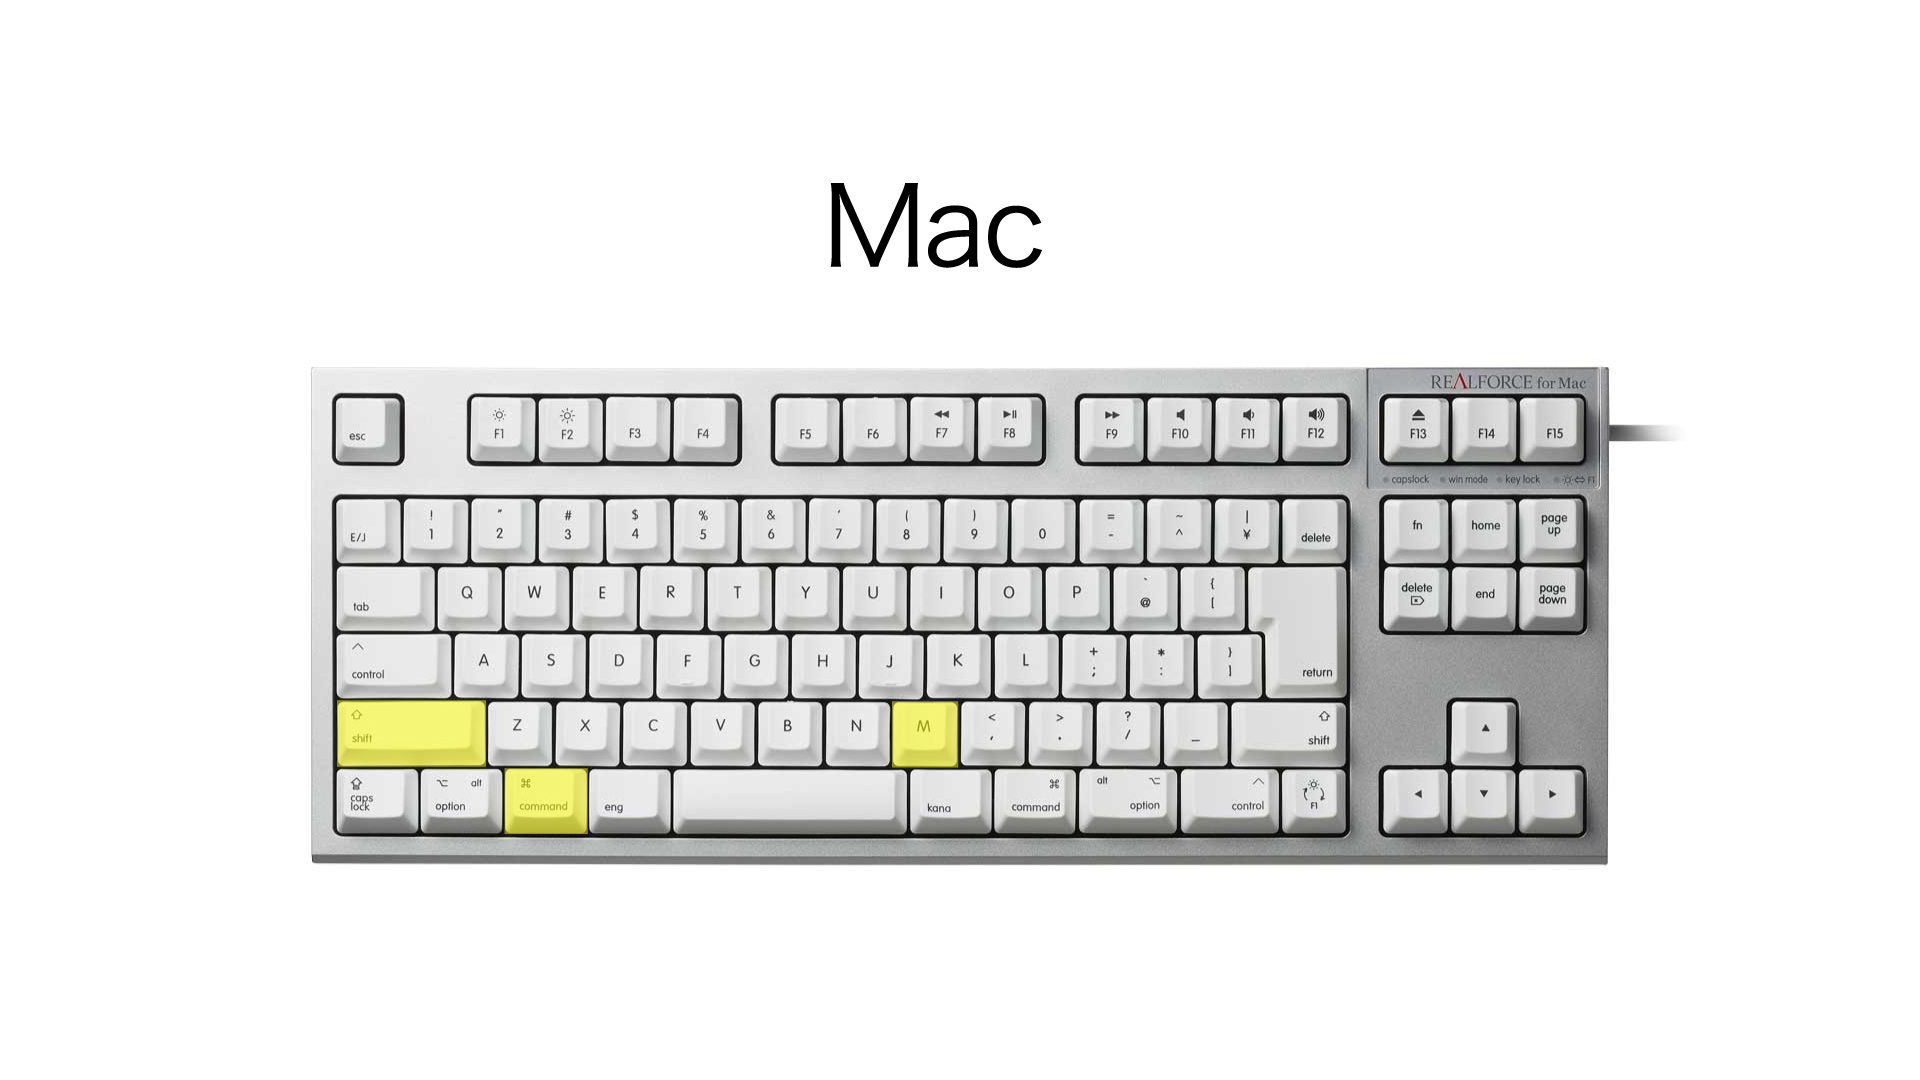 ট ইট র Realforce リアルフォース 公式 Rf ショートカットtips Discord内で使用できるミュート切り替えの ショートカットキー Win Ctrl Shift M 赤色部分 Mac Cmd Shift M 黄色部分 くしゃみなど自分の音声を消したいときに便利です